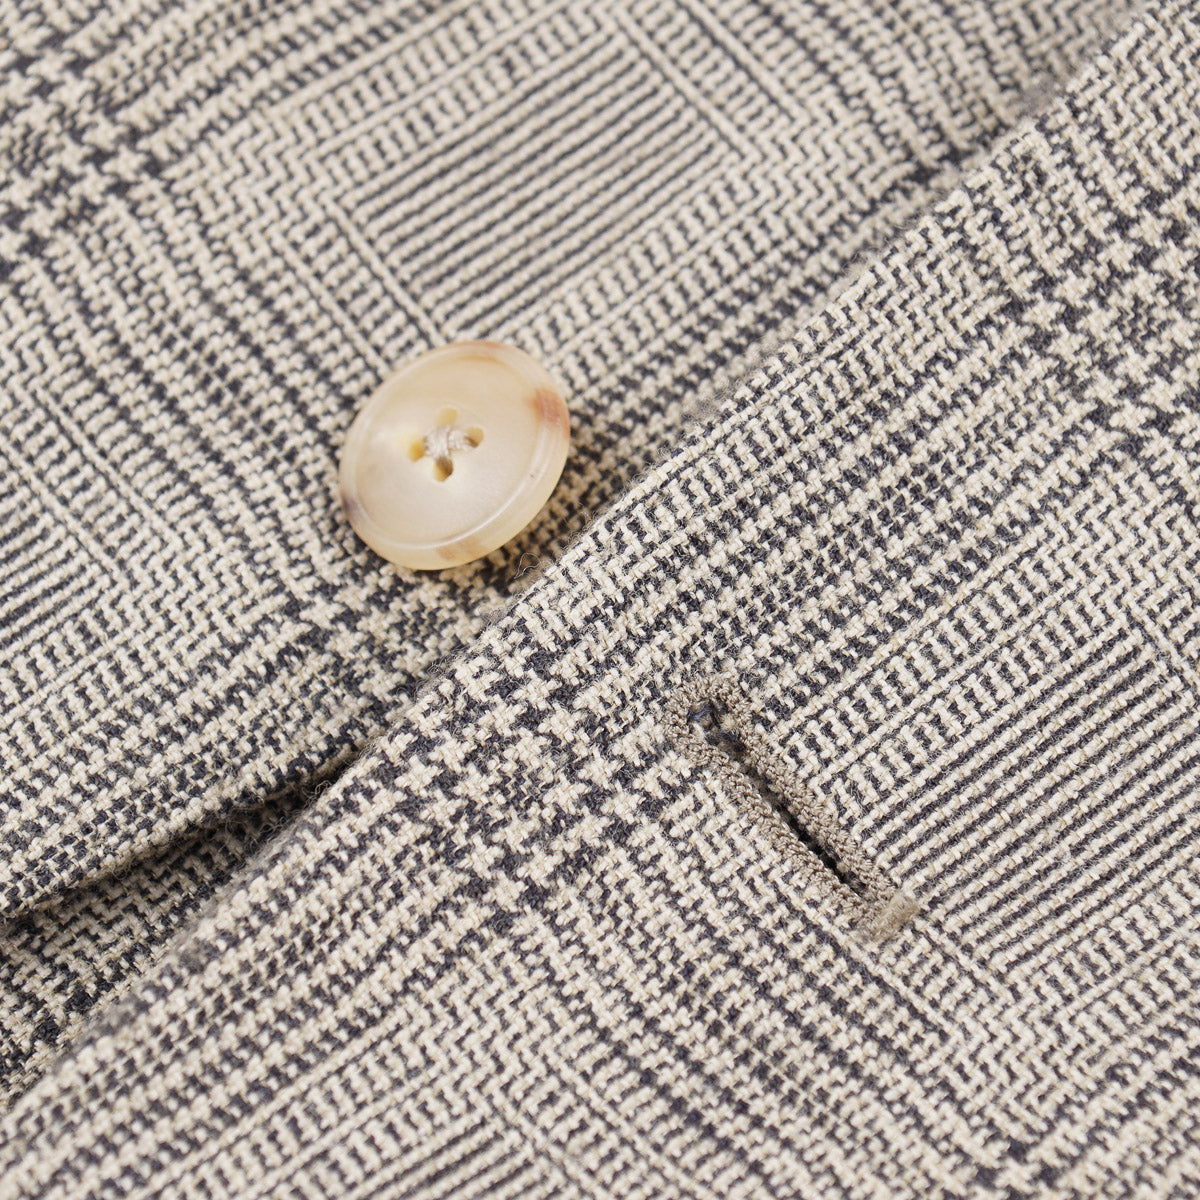 Boglioli Silk-Linen-Wool 'K Jacket' Sport Coat - Top Shelf Apparel